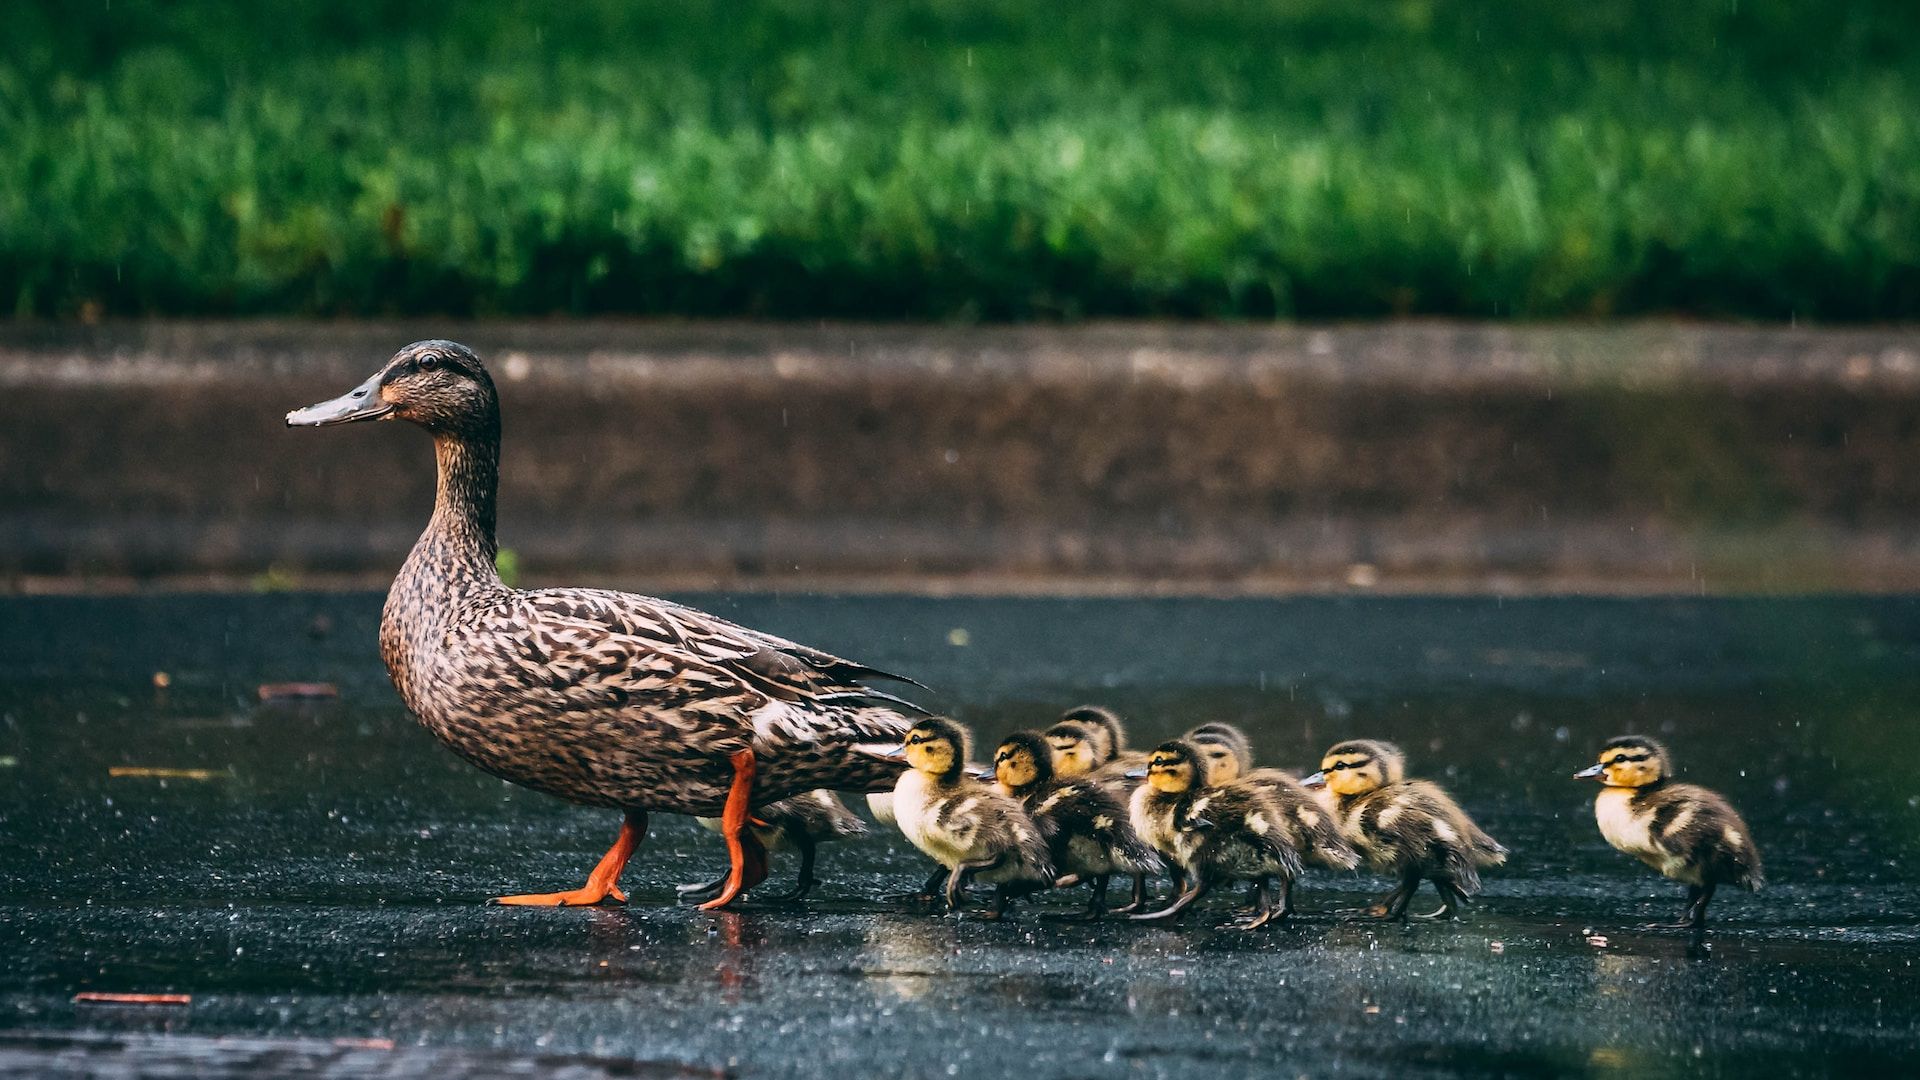 duck leading ducklings across a rain-soaked street